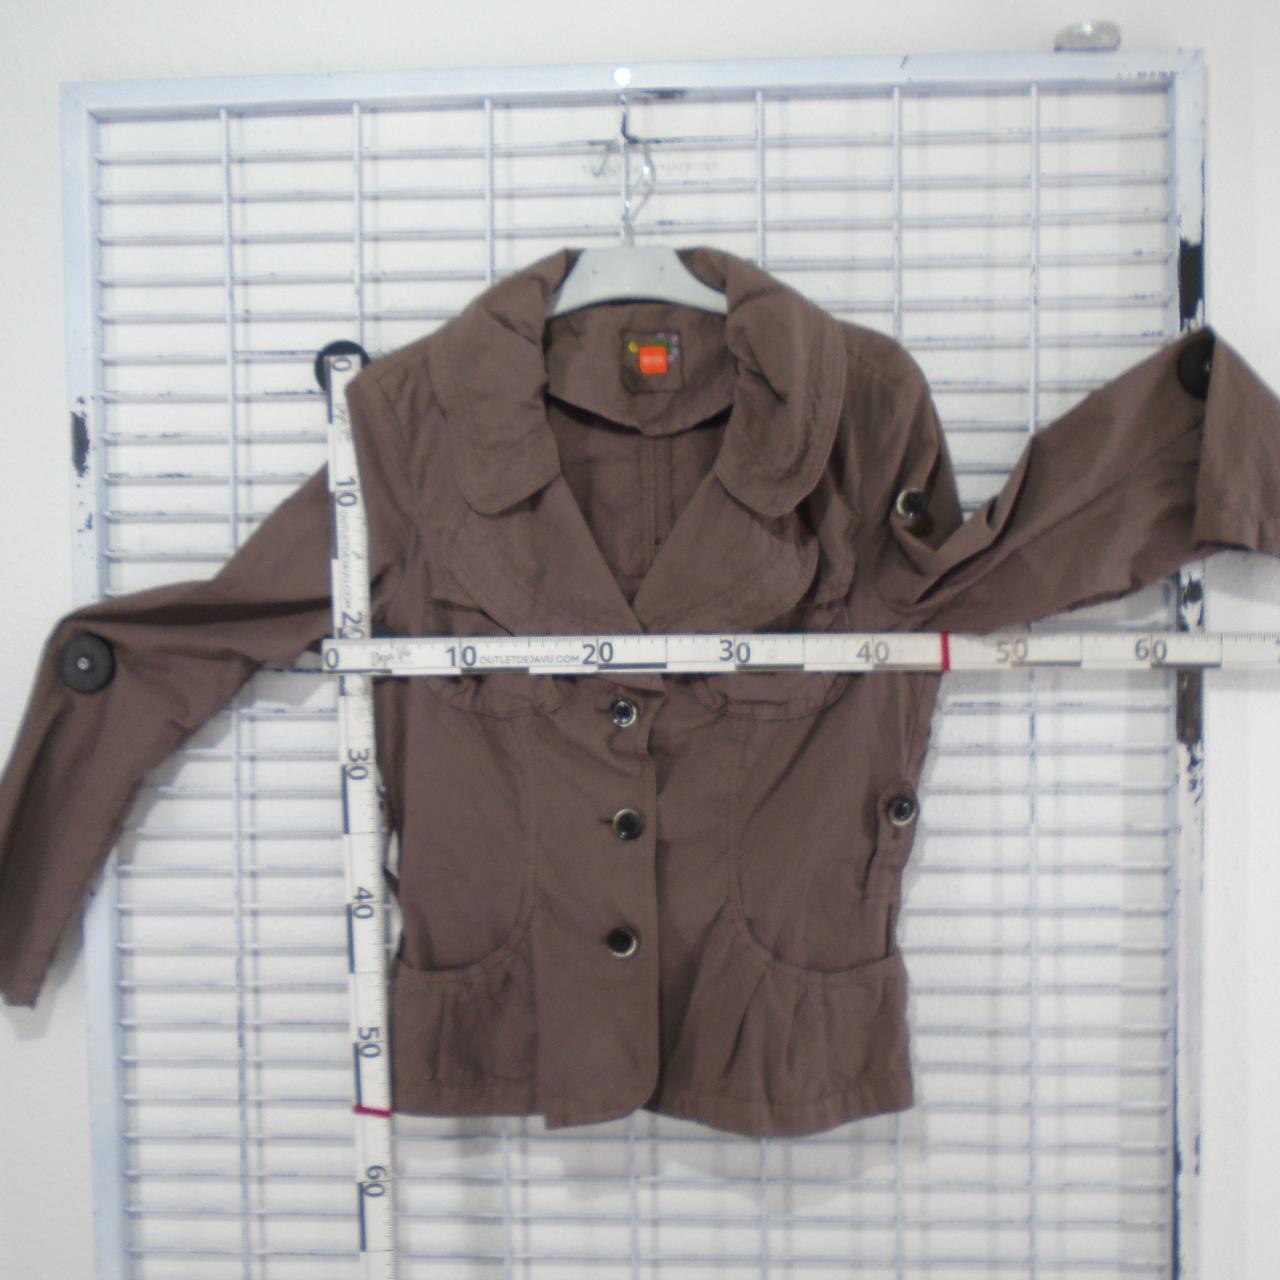 Women's Jacket Hugo Boss. Brown. L. Used. Very good